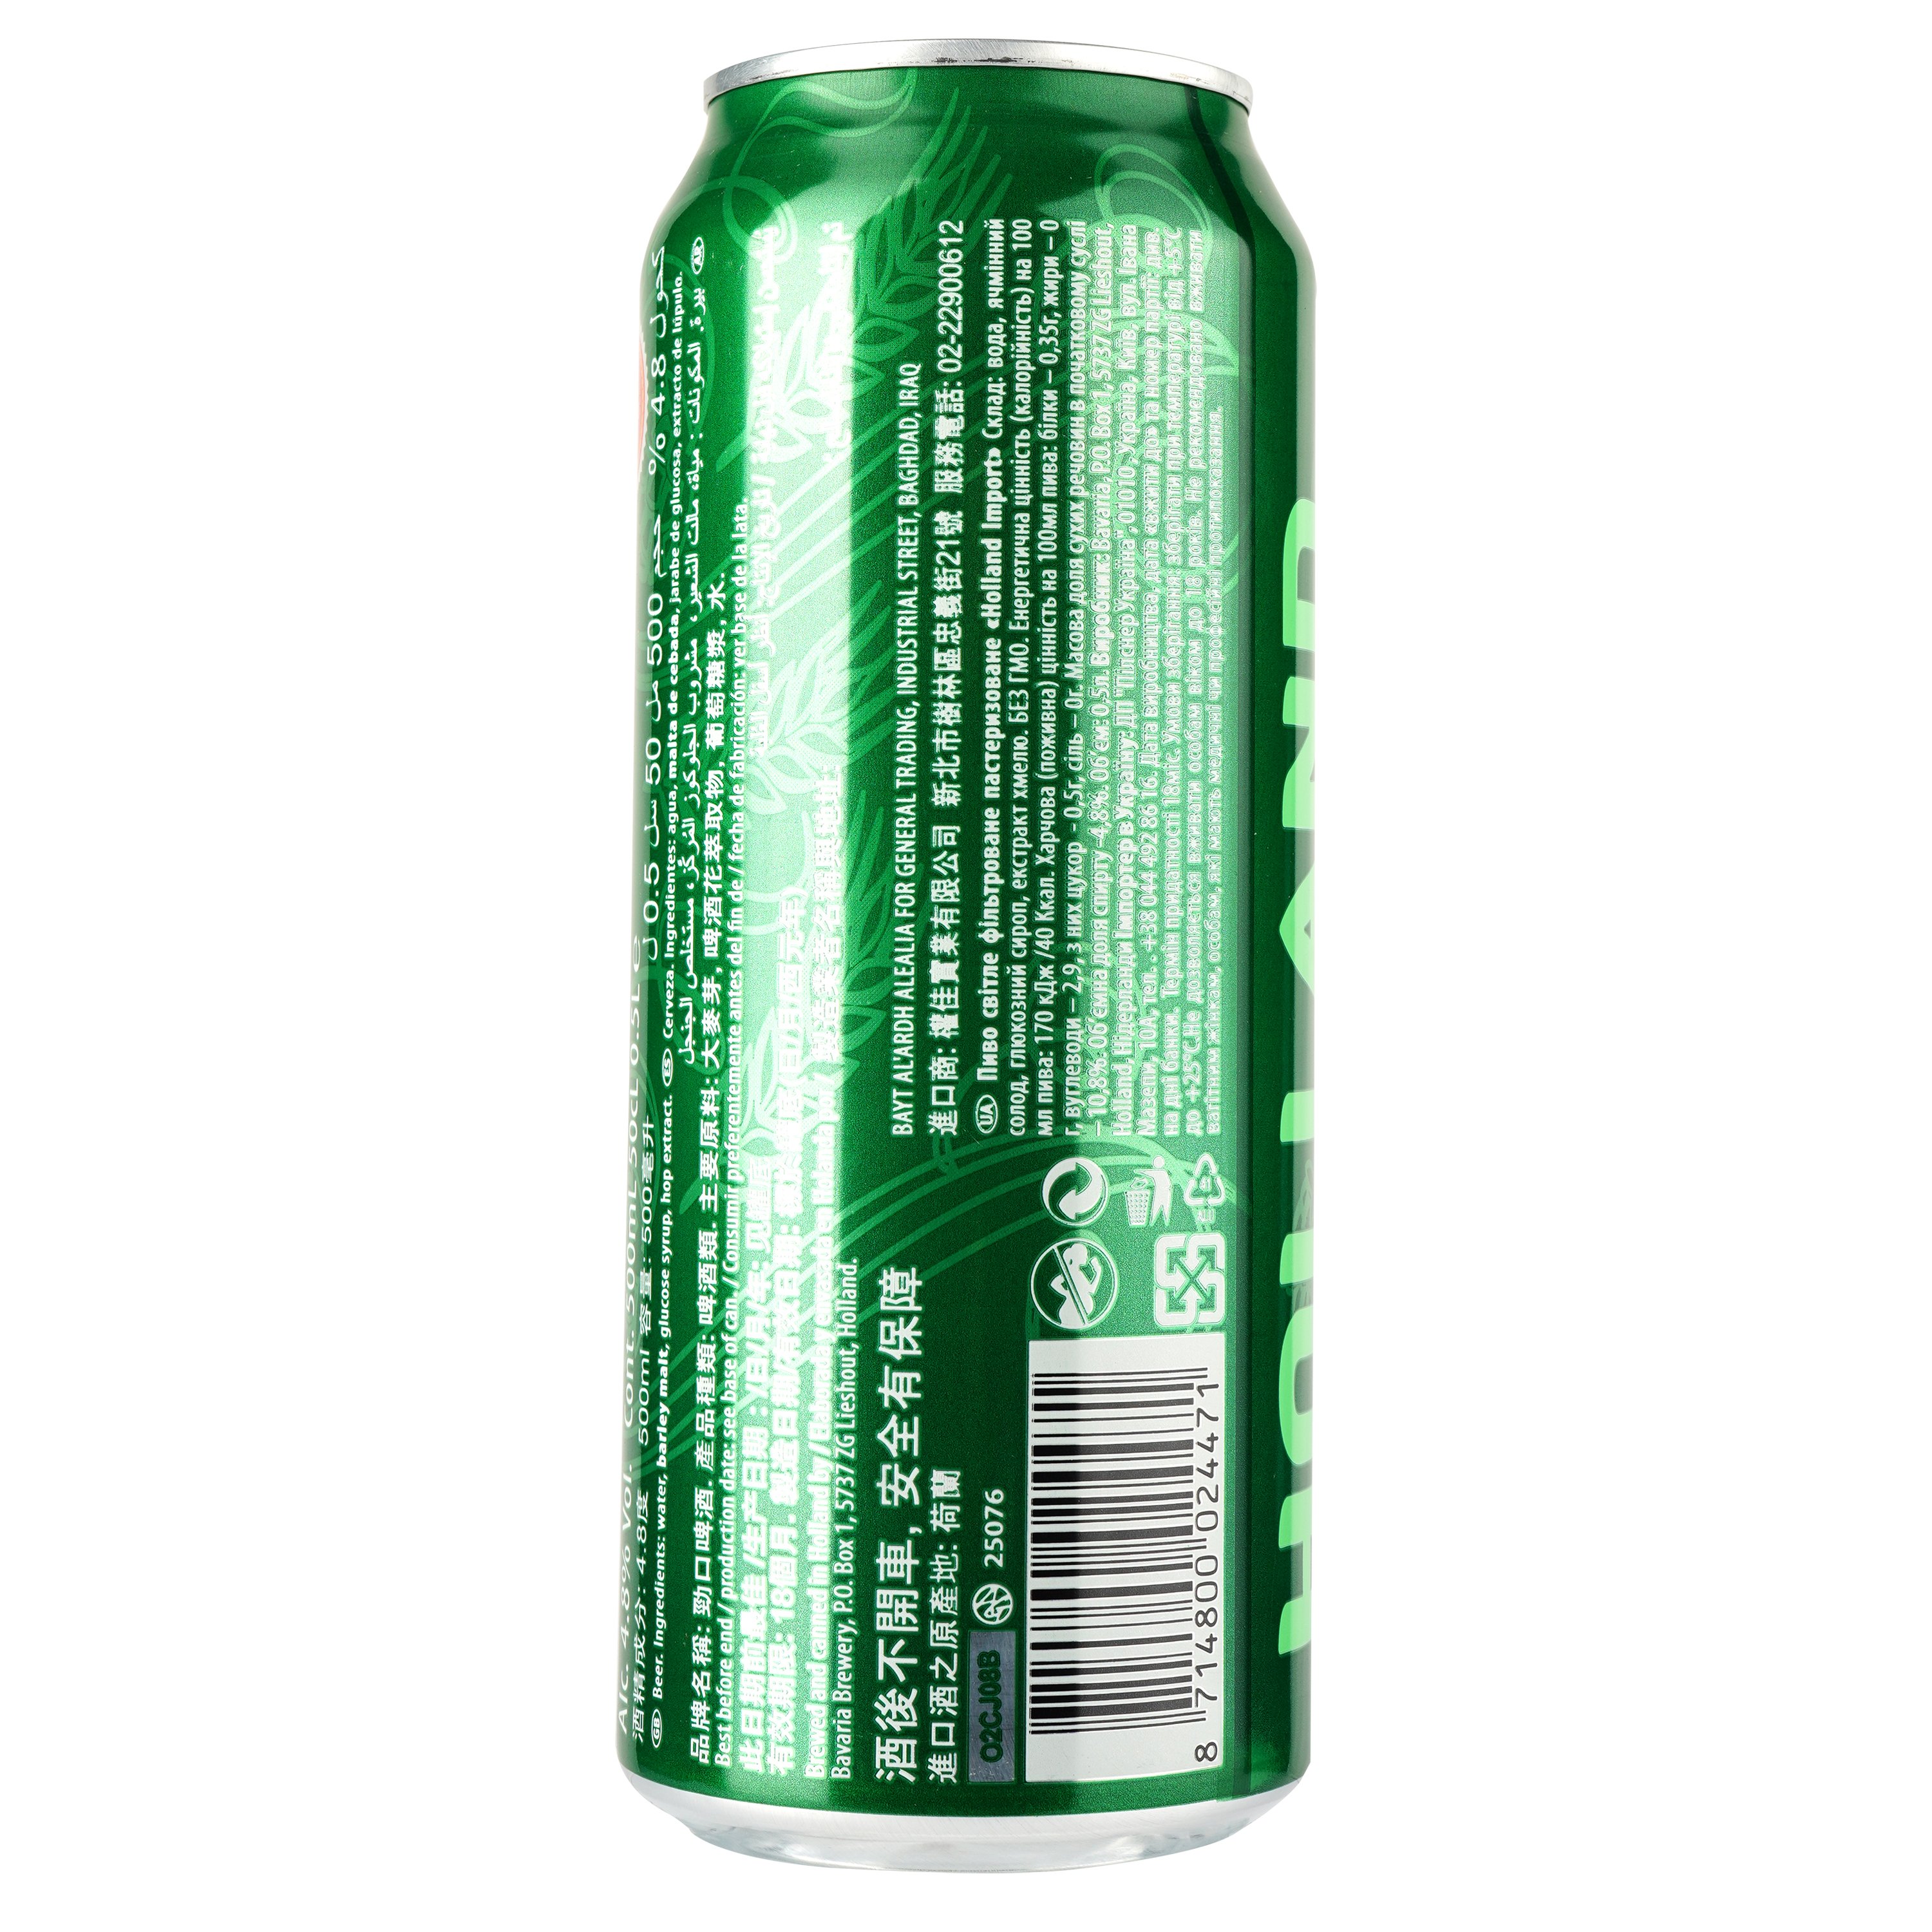 Пиво Holland Import, світле, фільтроване, 4,8%, з/б, 0,5 л - фото 2